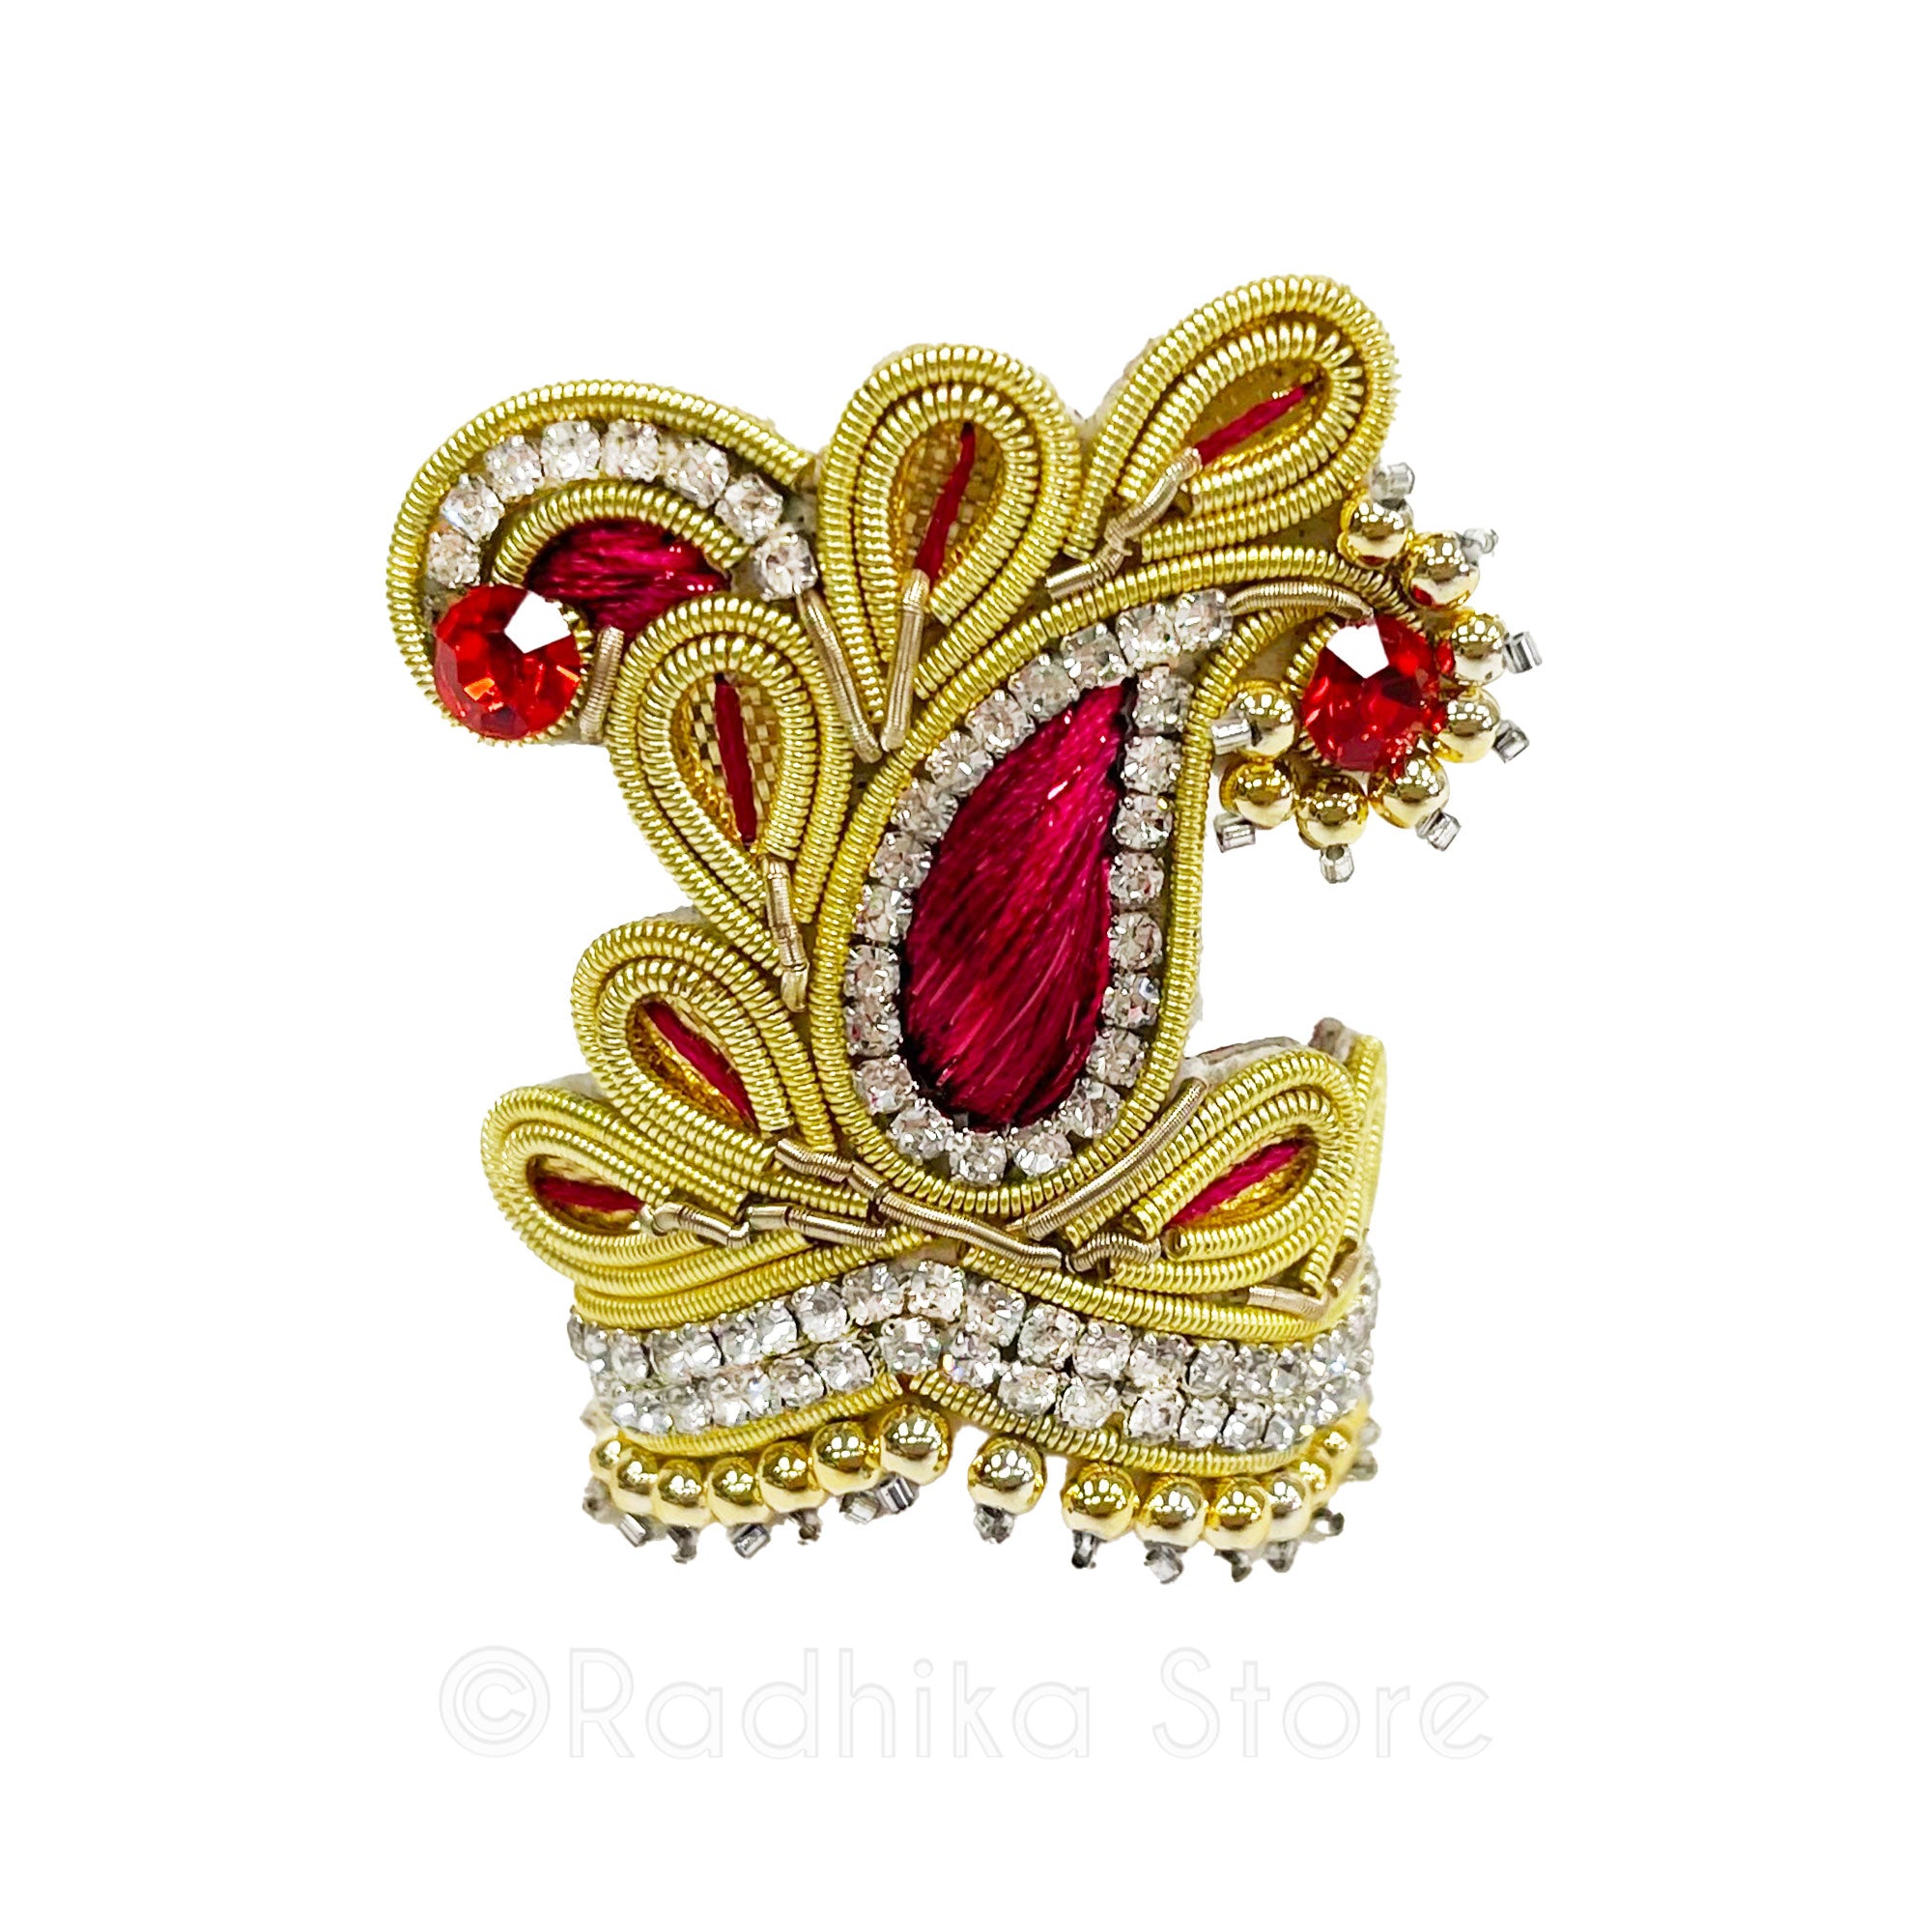 Opulent Vrindavan Chandrika - Deity Crown